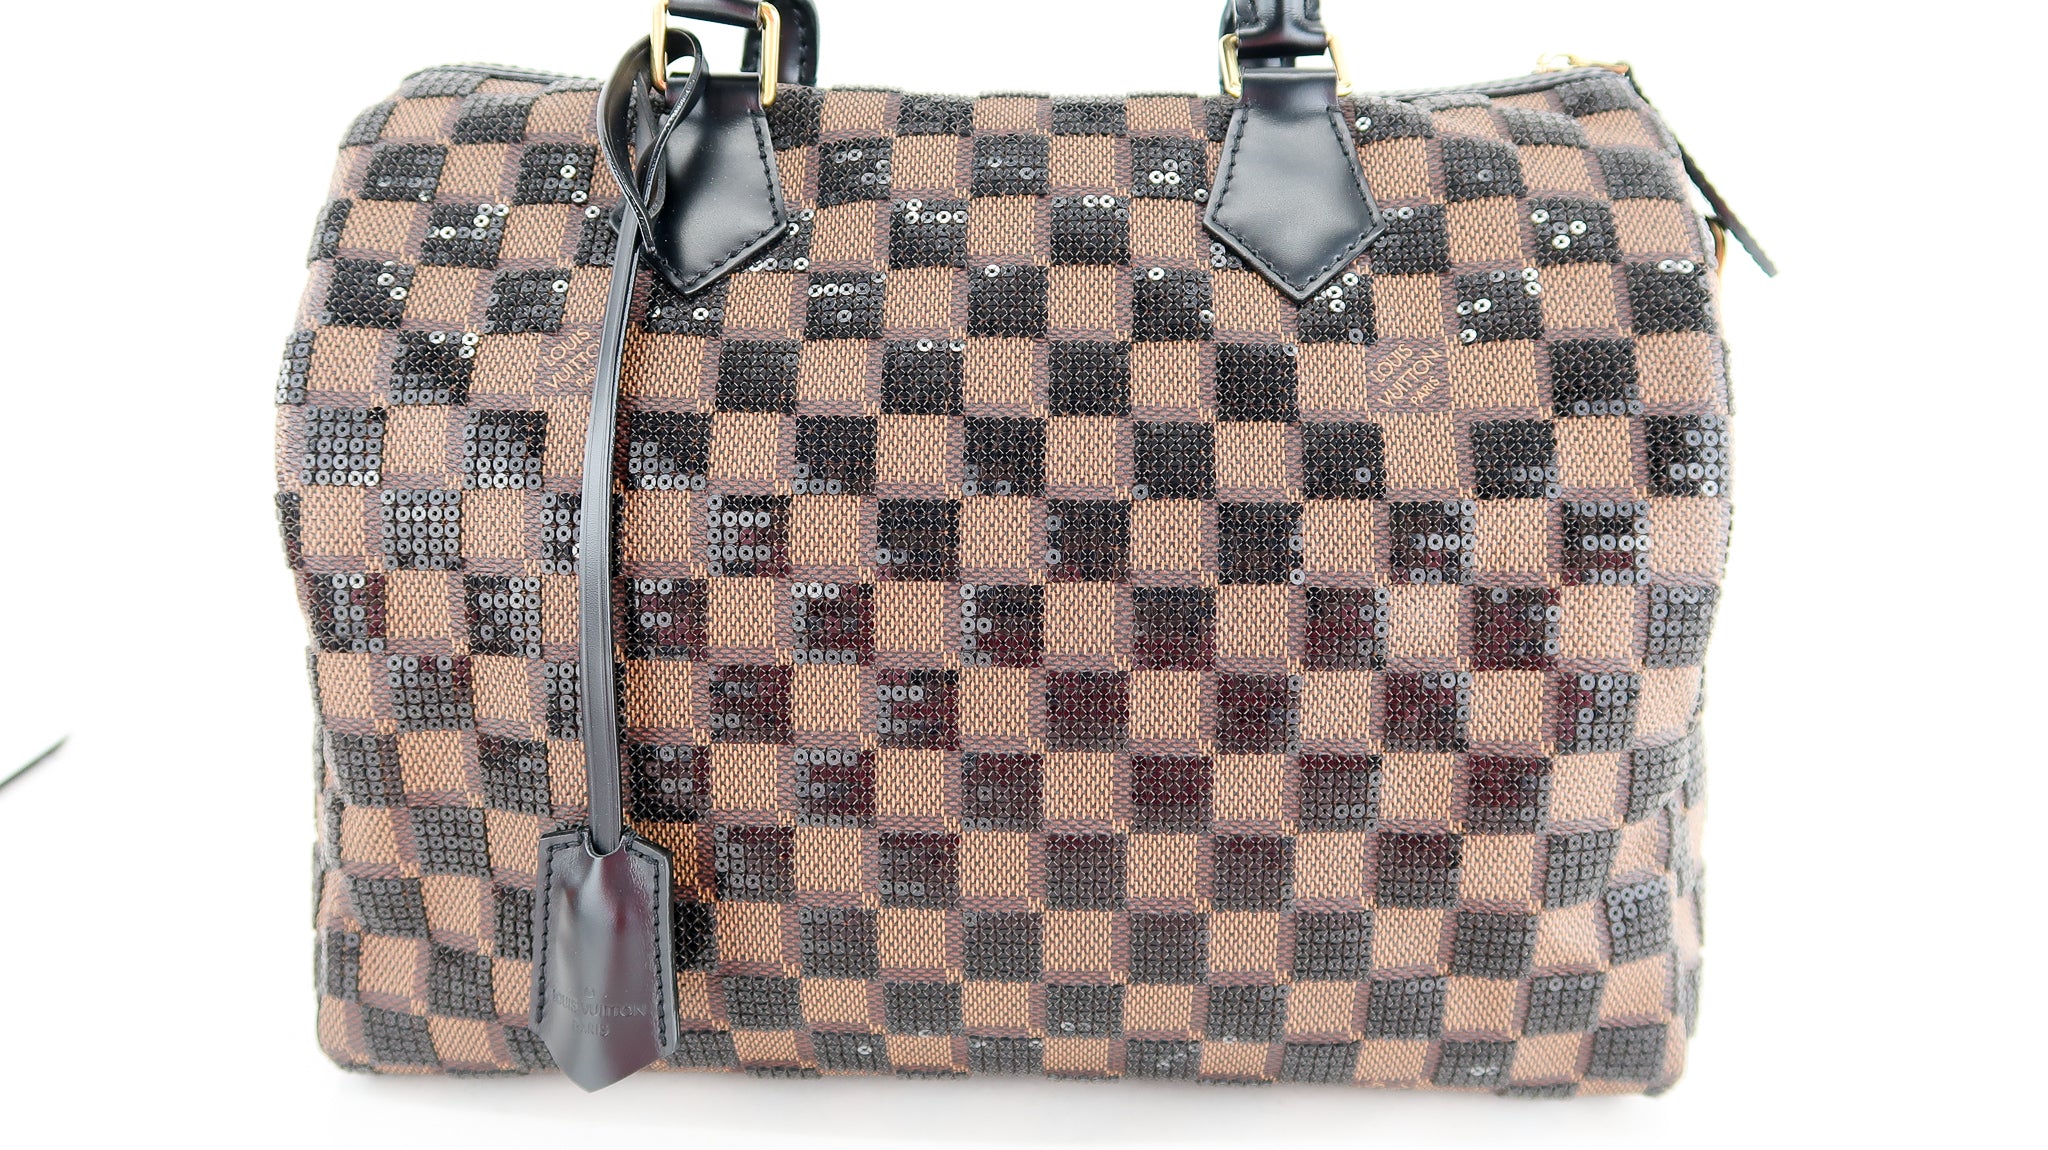 Authentic New Louis Vuitton Limited Edition Damier Paillettes Speedy 30 Bag